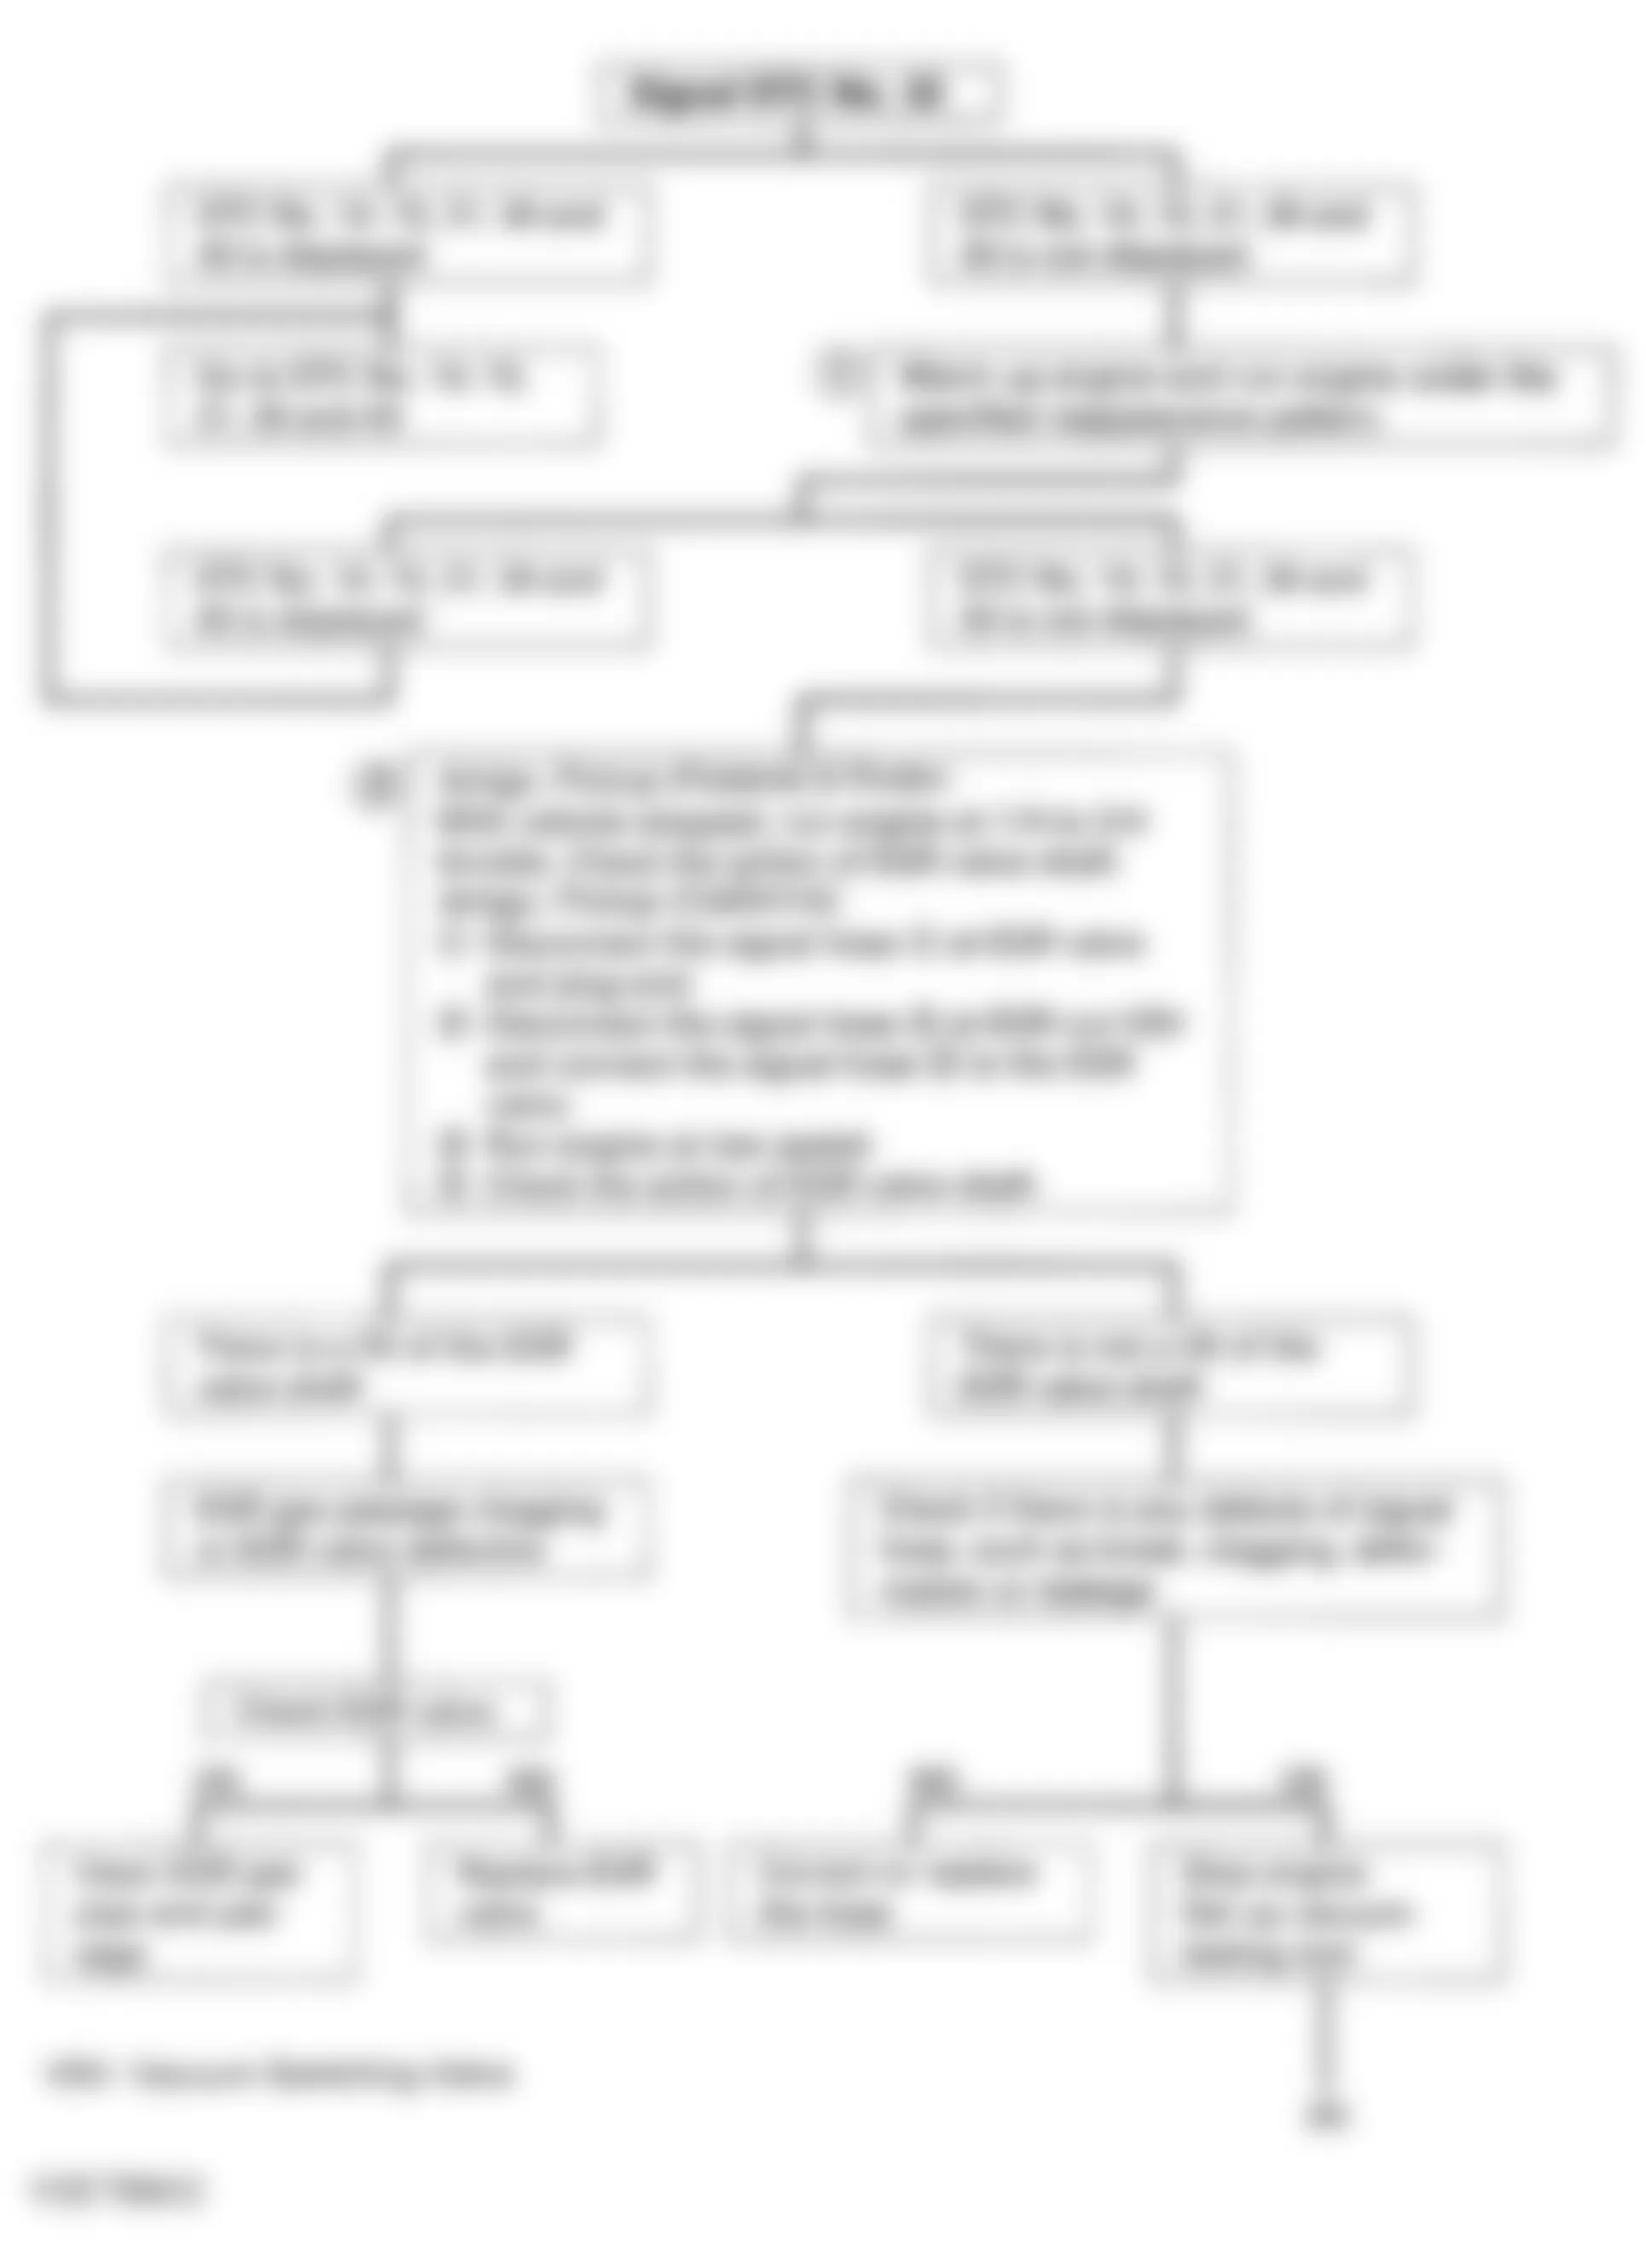 Isuzu Rodeo LS 1995 - Component Locations -  Code 32 - Diagnostic Flowchart (1 Of 3)